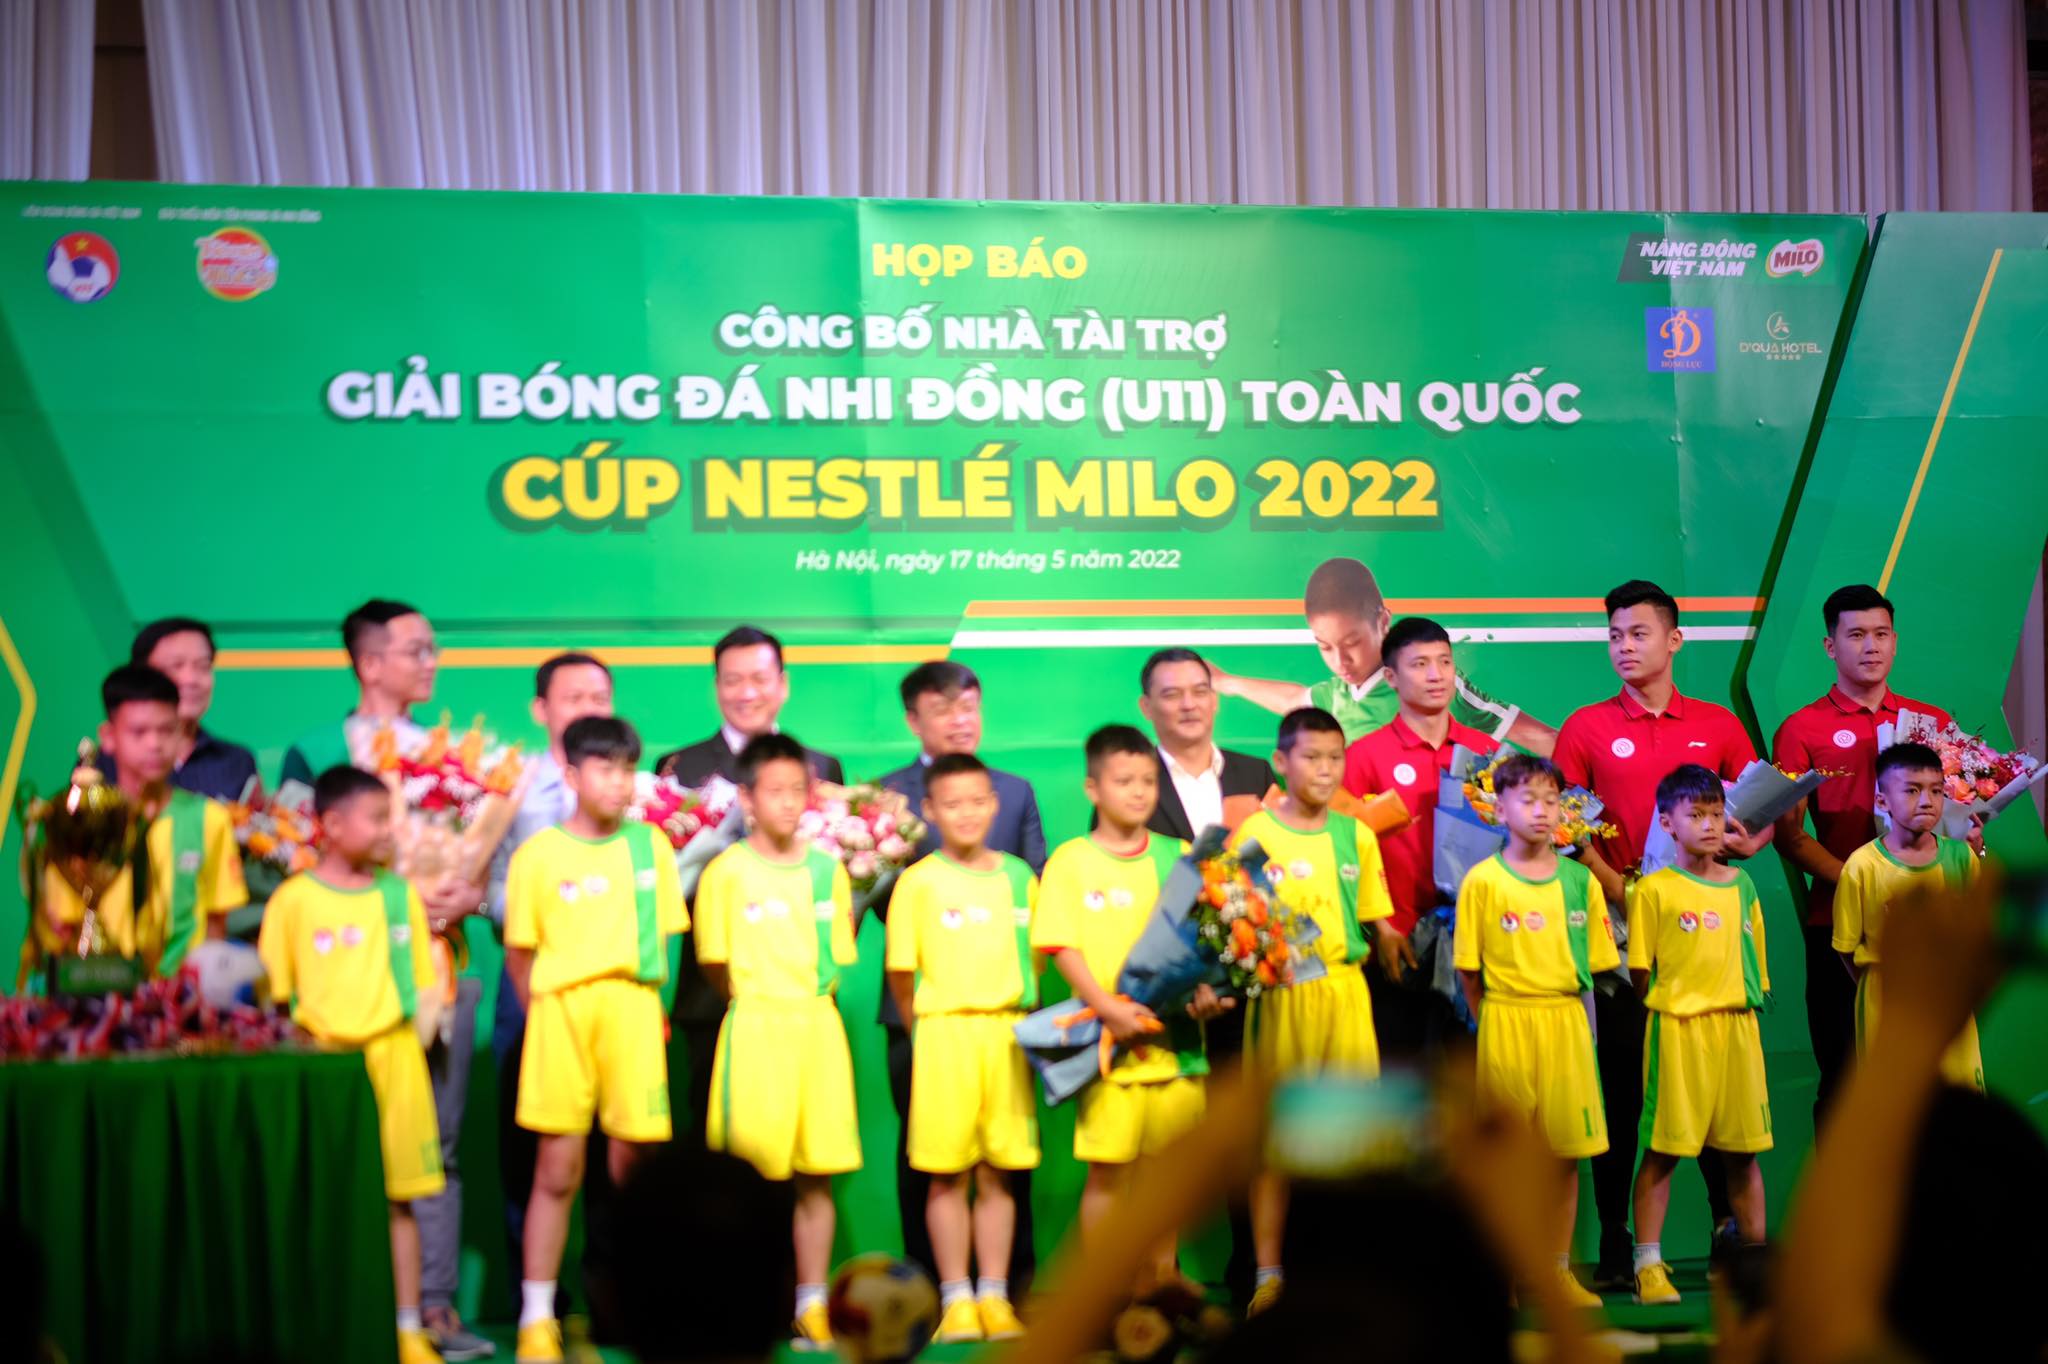 Nestlé MILO trở lại cùng Giải Bóng đá Nhi đồng (U11) toàn quốc trong năm 2022